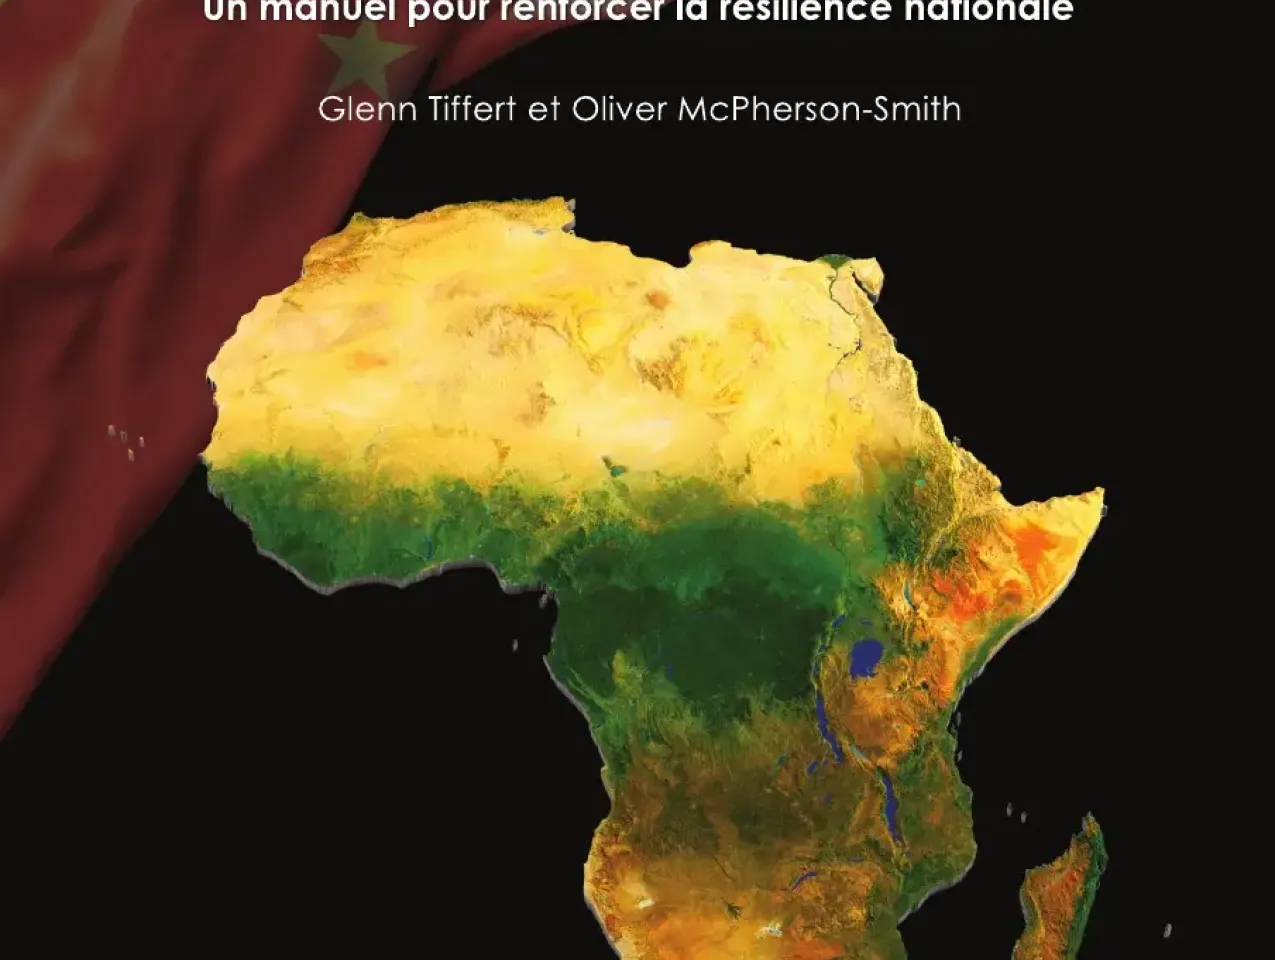 Image for Le pouvoir de subversion de la Chine en Afrique : un manuel pour renforcer la résilience nationale